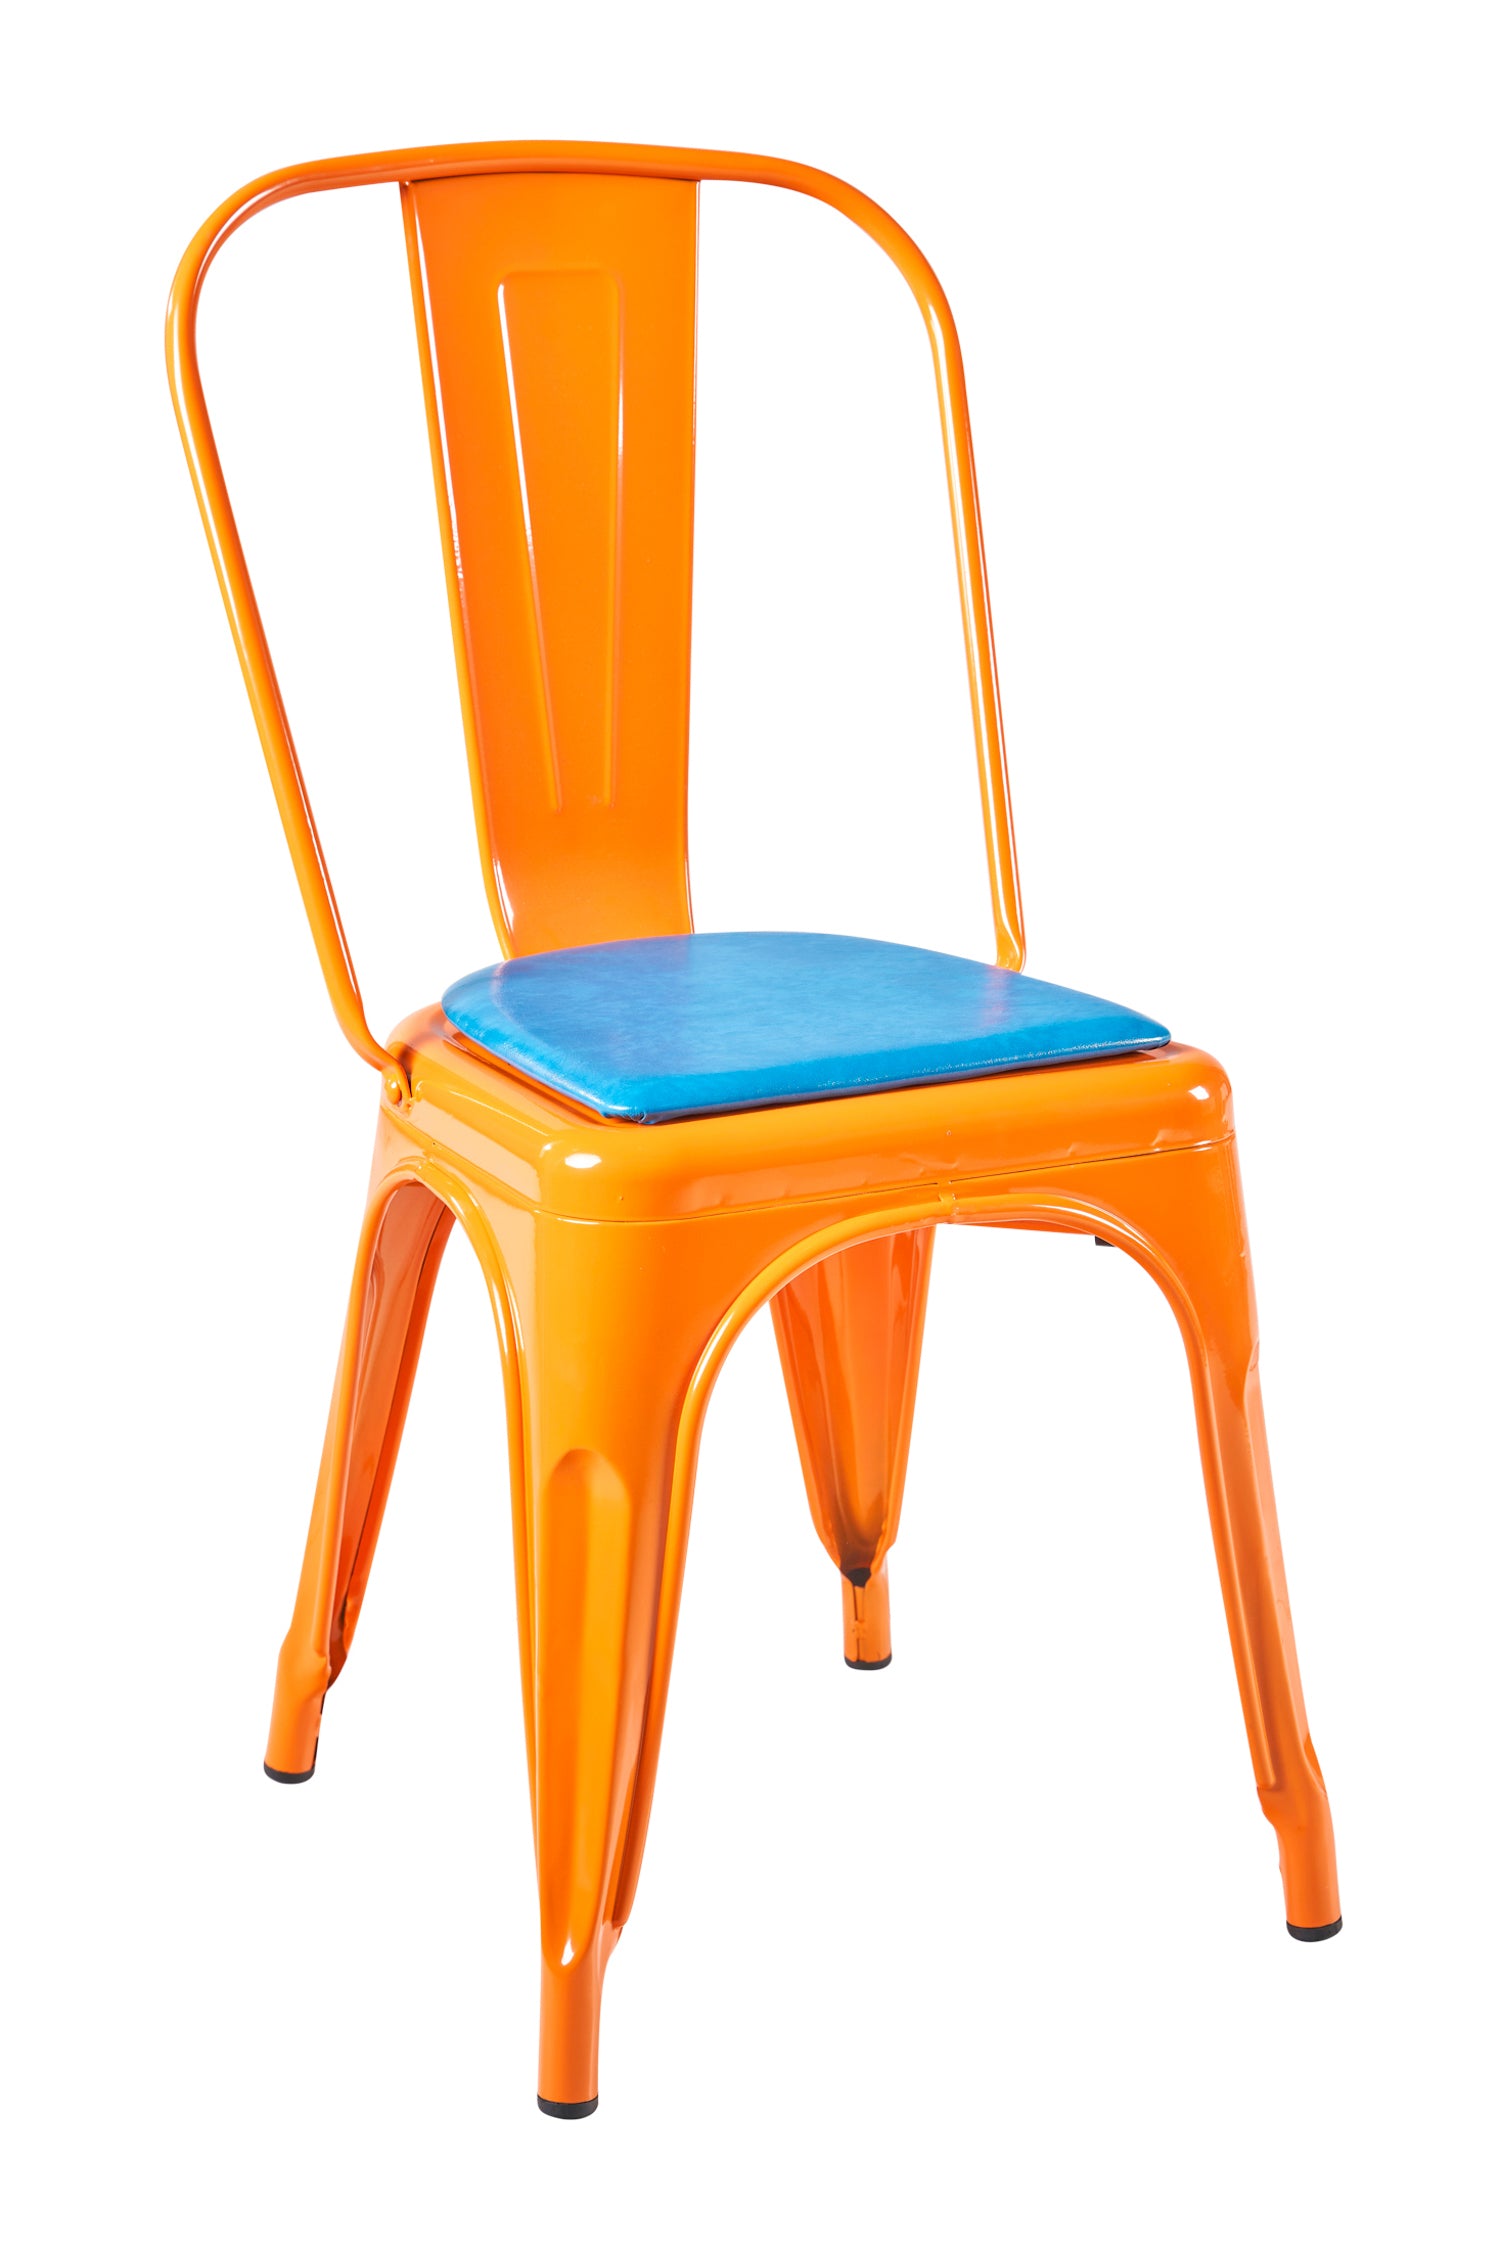 Novita home_AK-32/OB_Cindy - sedia arancio con cuscino blue_1